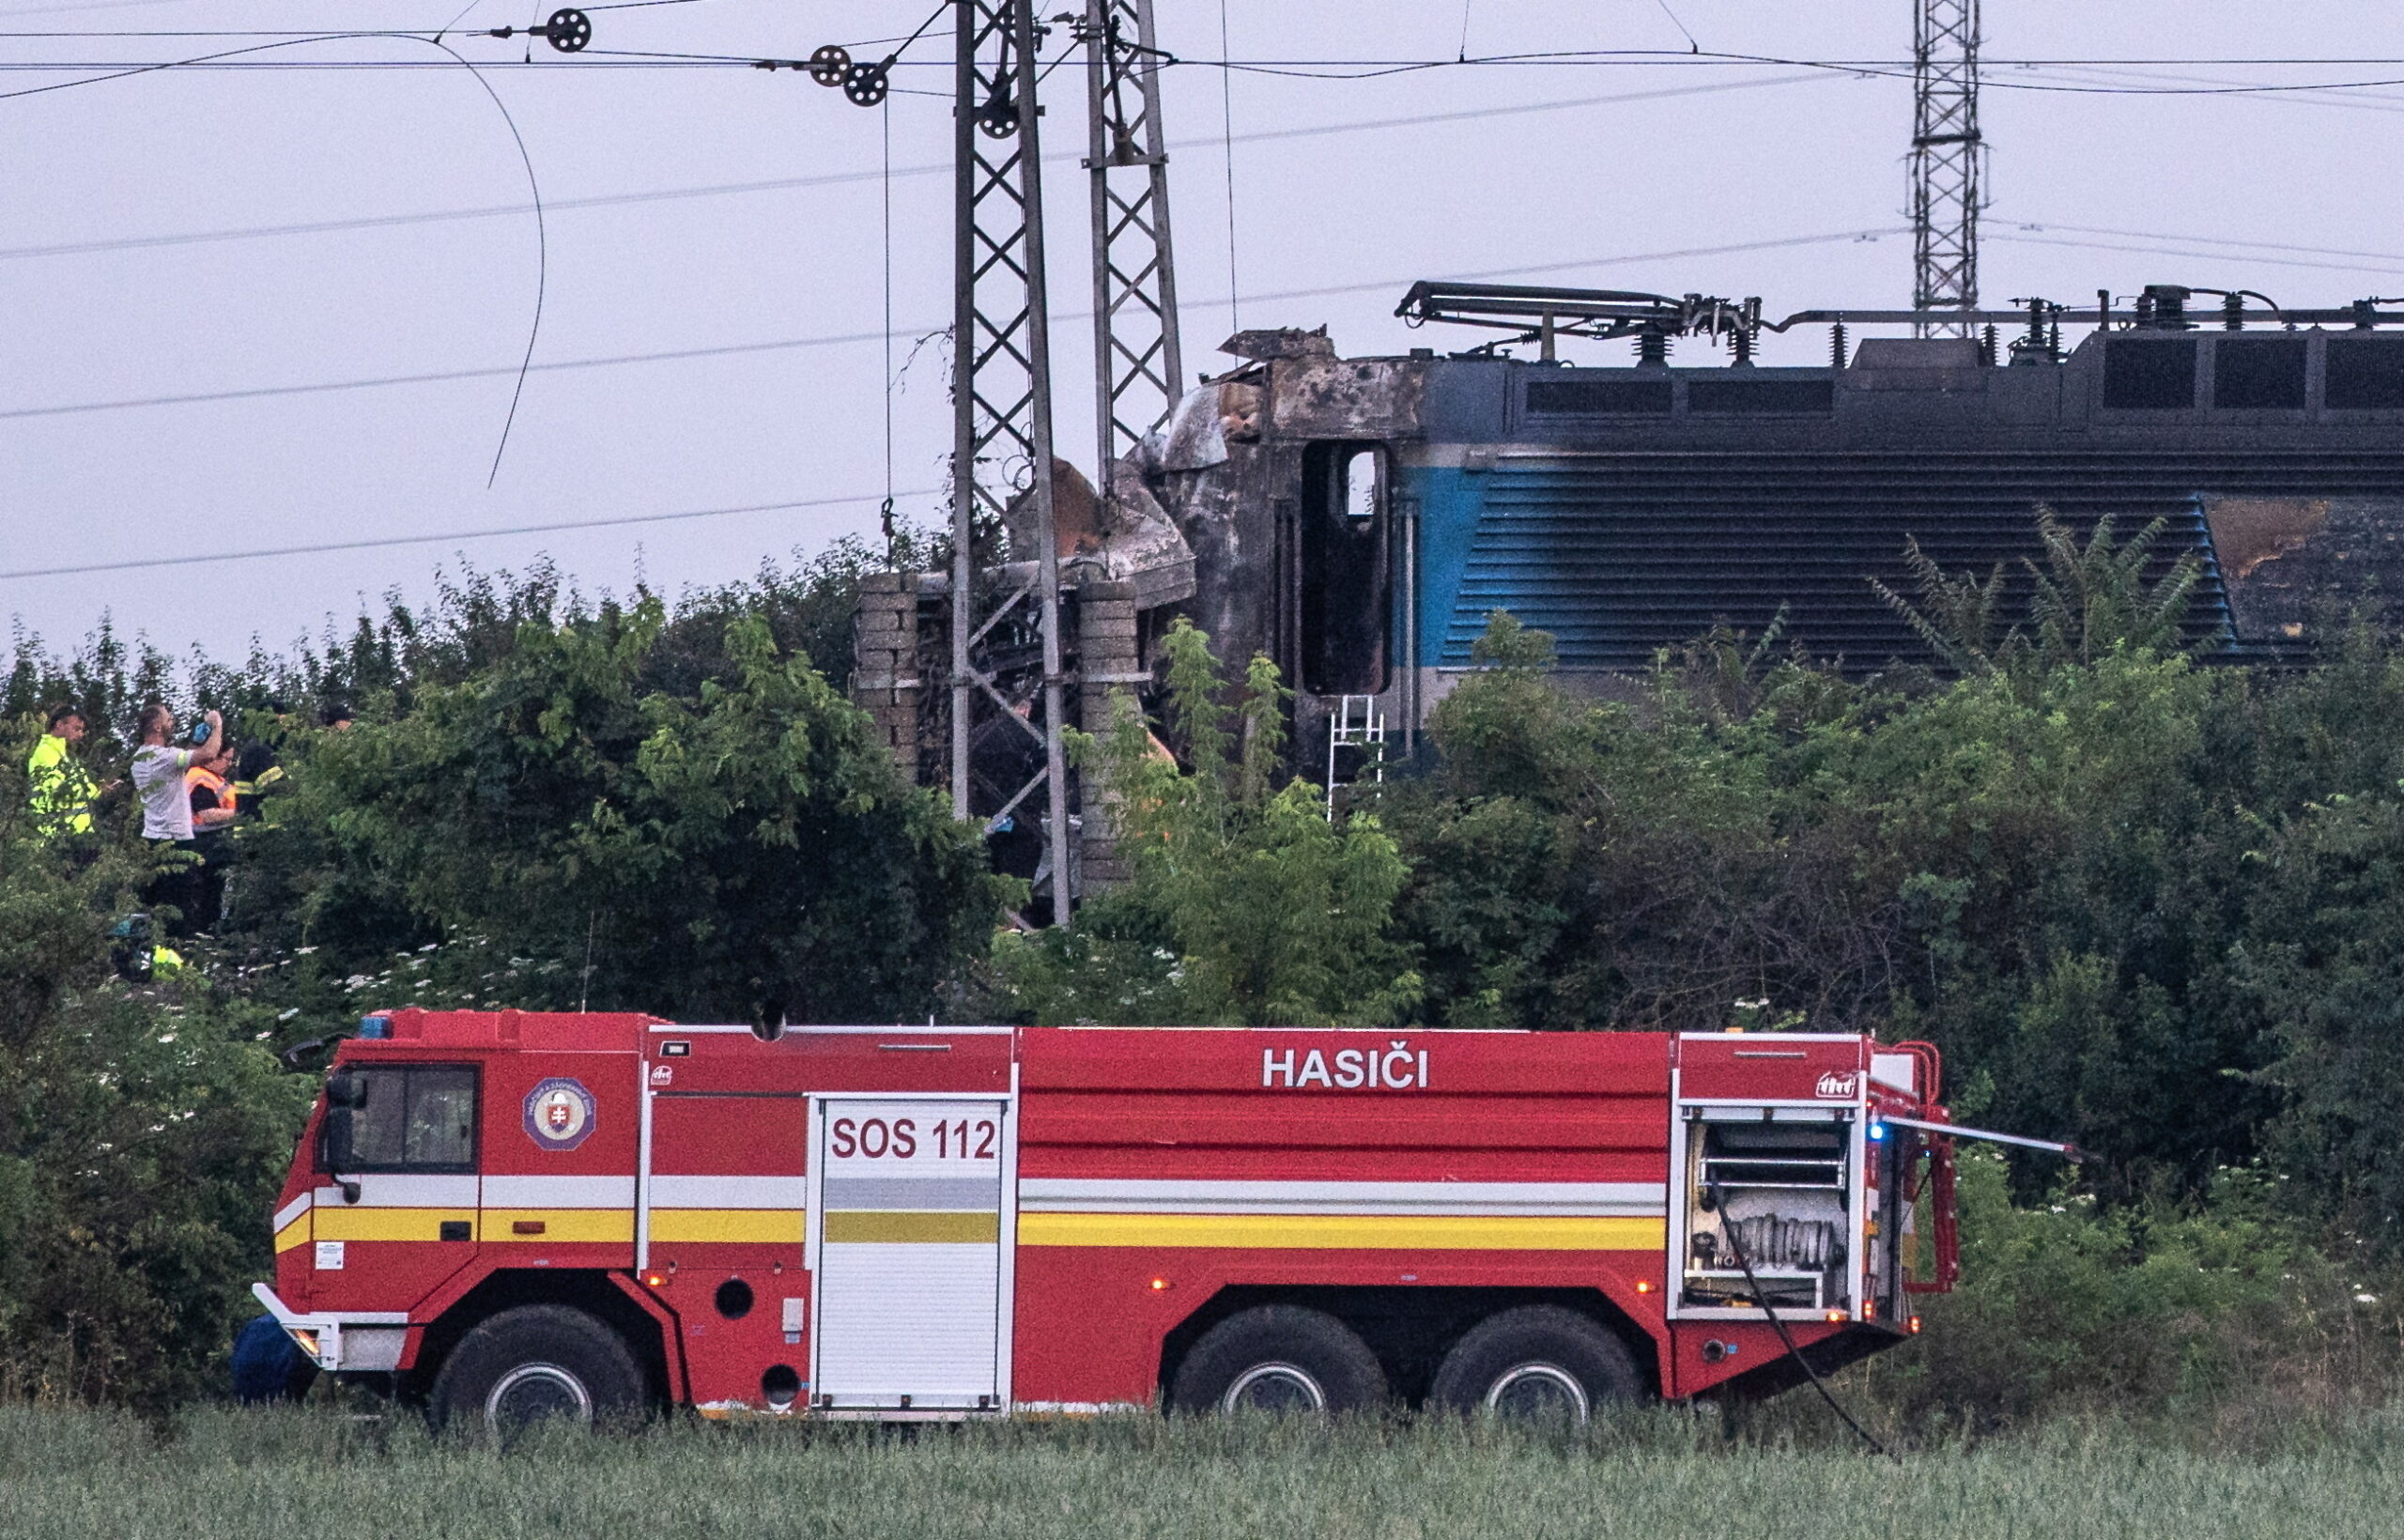 Érsekújvári vonatkatasztrófa: emberi mulasztás miatt veszthette életét hét ember